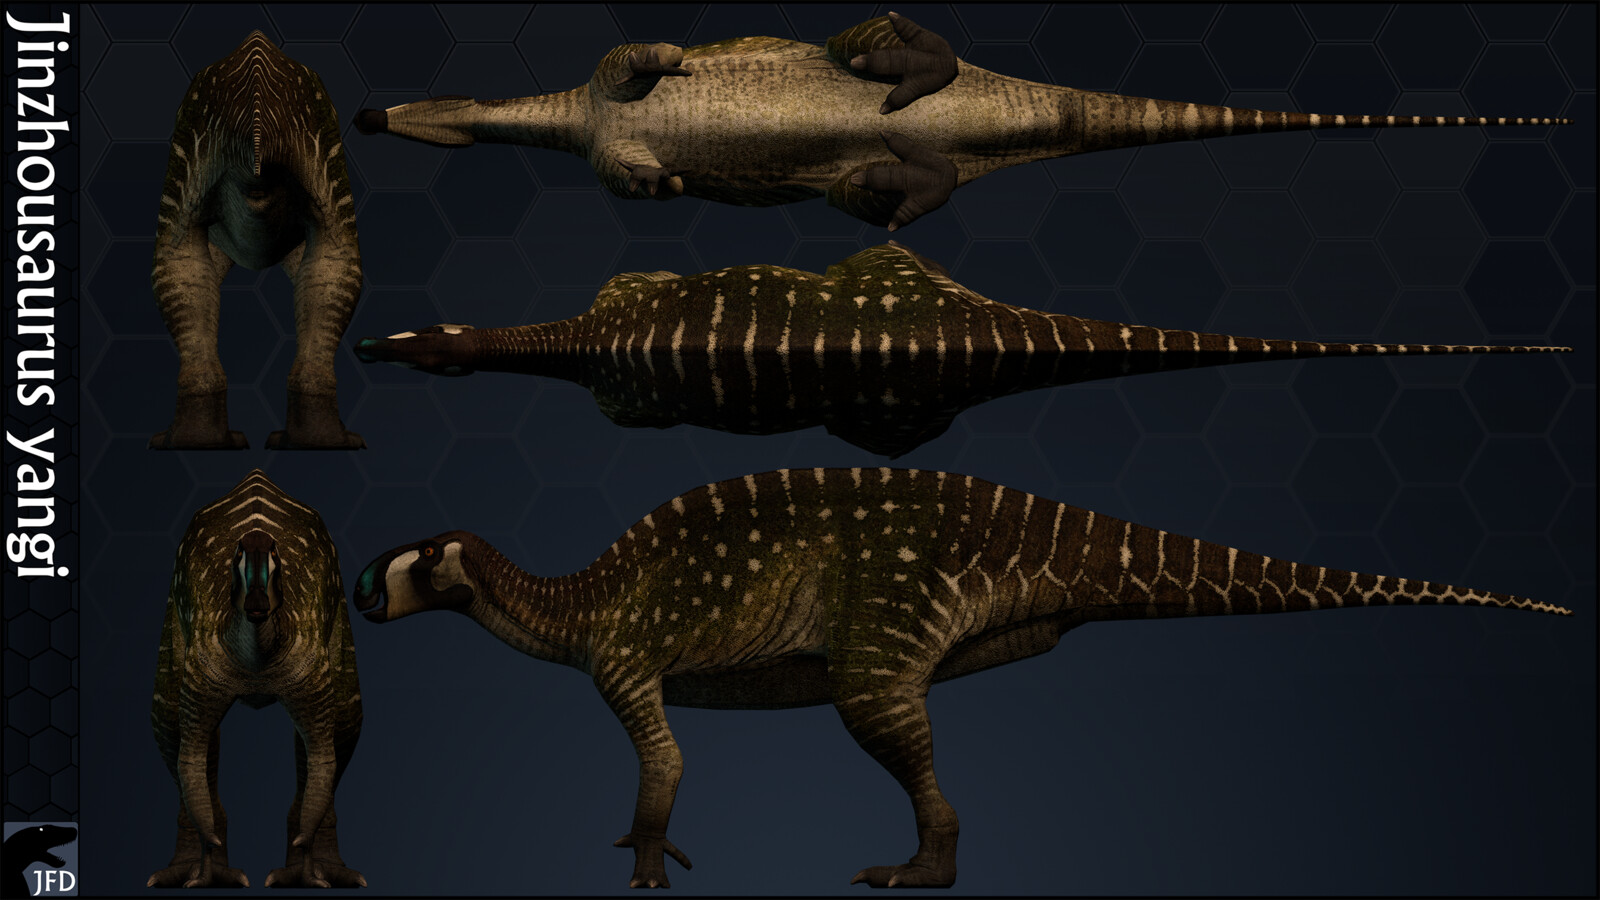 Jinzhousaurus yangi orthographic multi-view render.